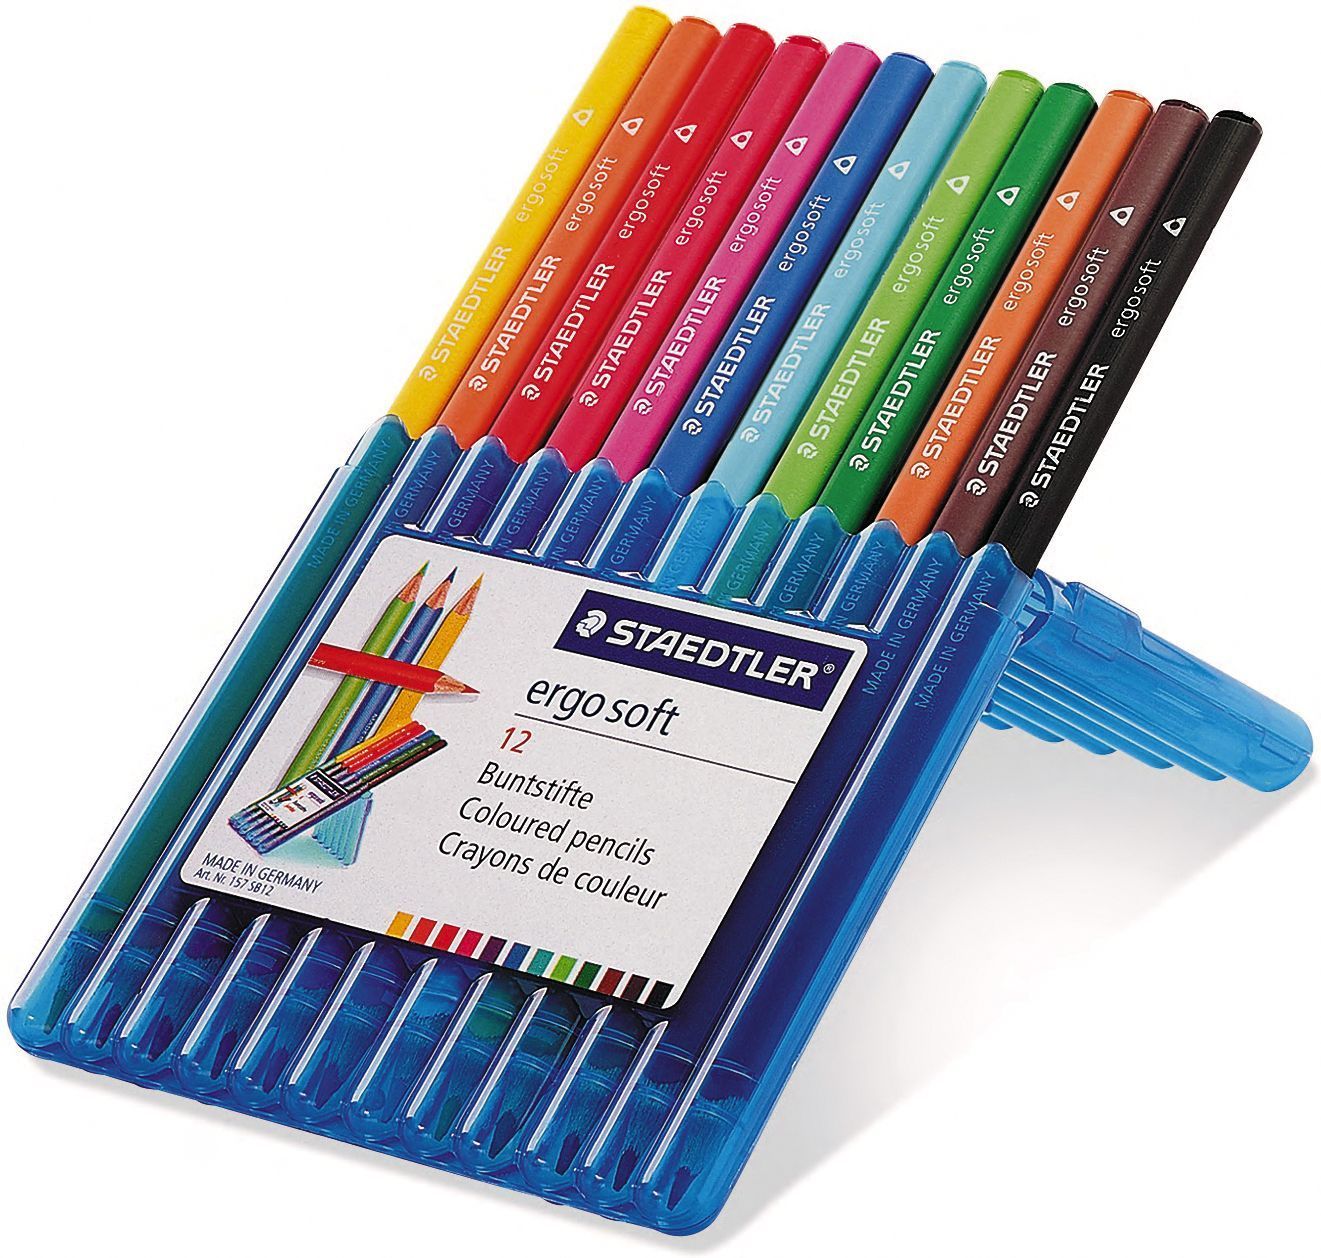 Staedtler Pencil Coloured Ergosoft Aquarell 12 Pack 4007817156117 eBay